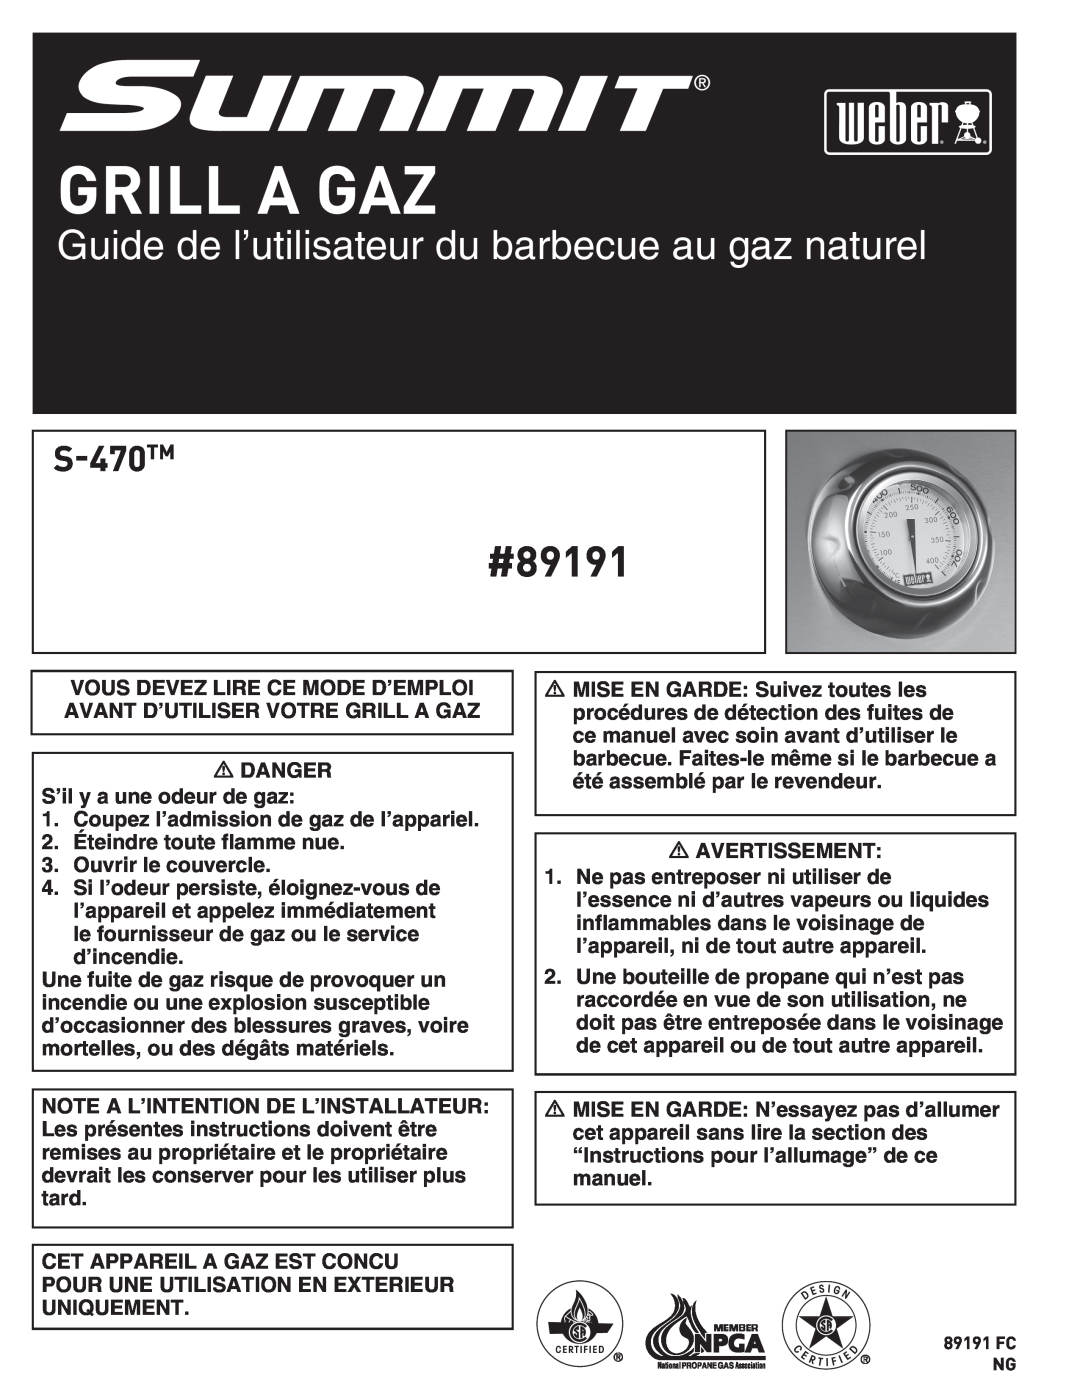 Weber S-470TM manual Grill A Gaz, Guide de l’utilisateur du barbecue au gaz naturel, #89191 